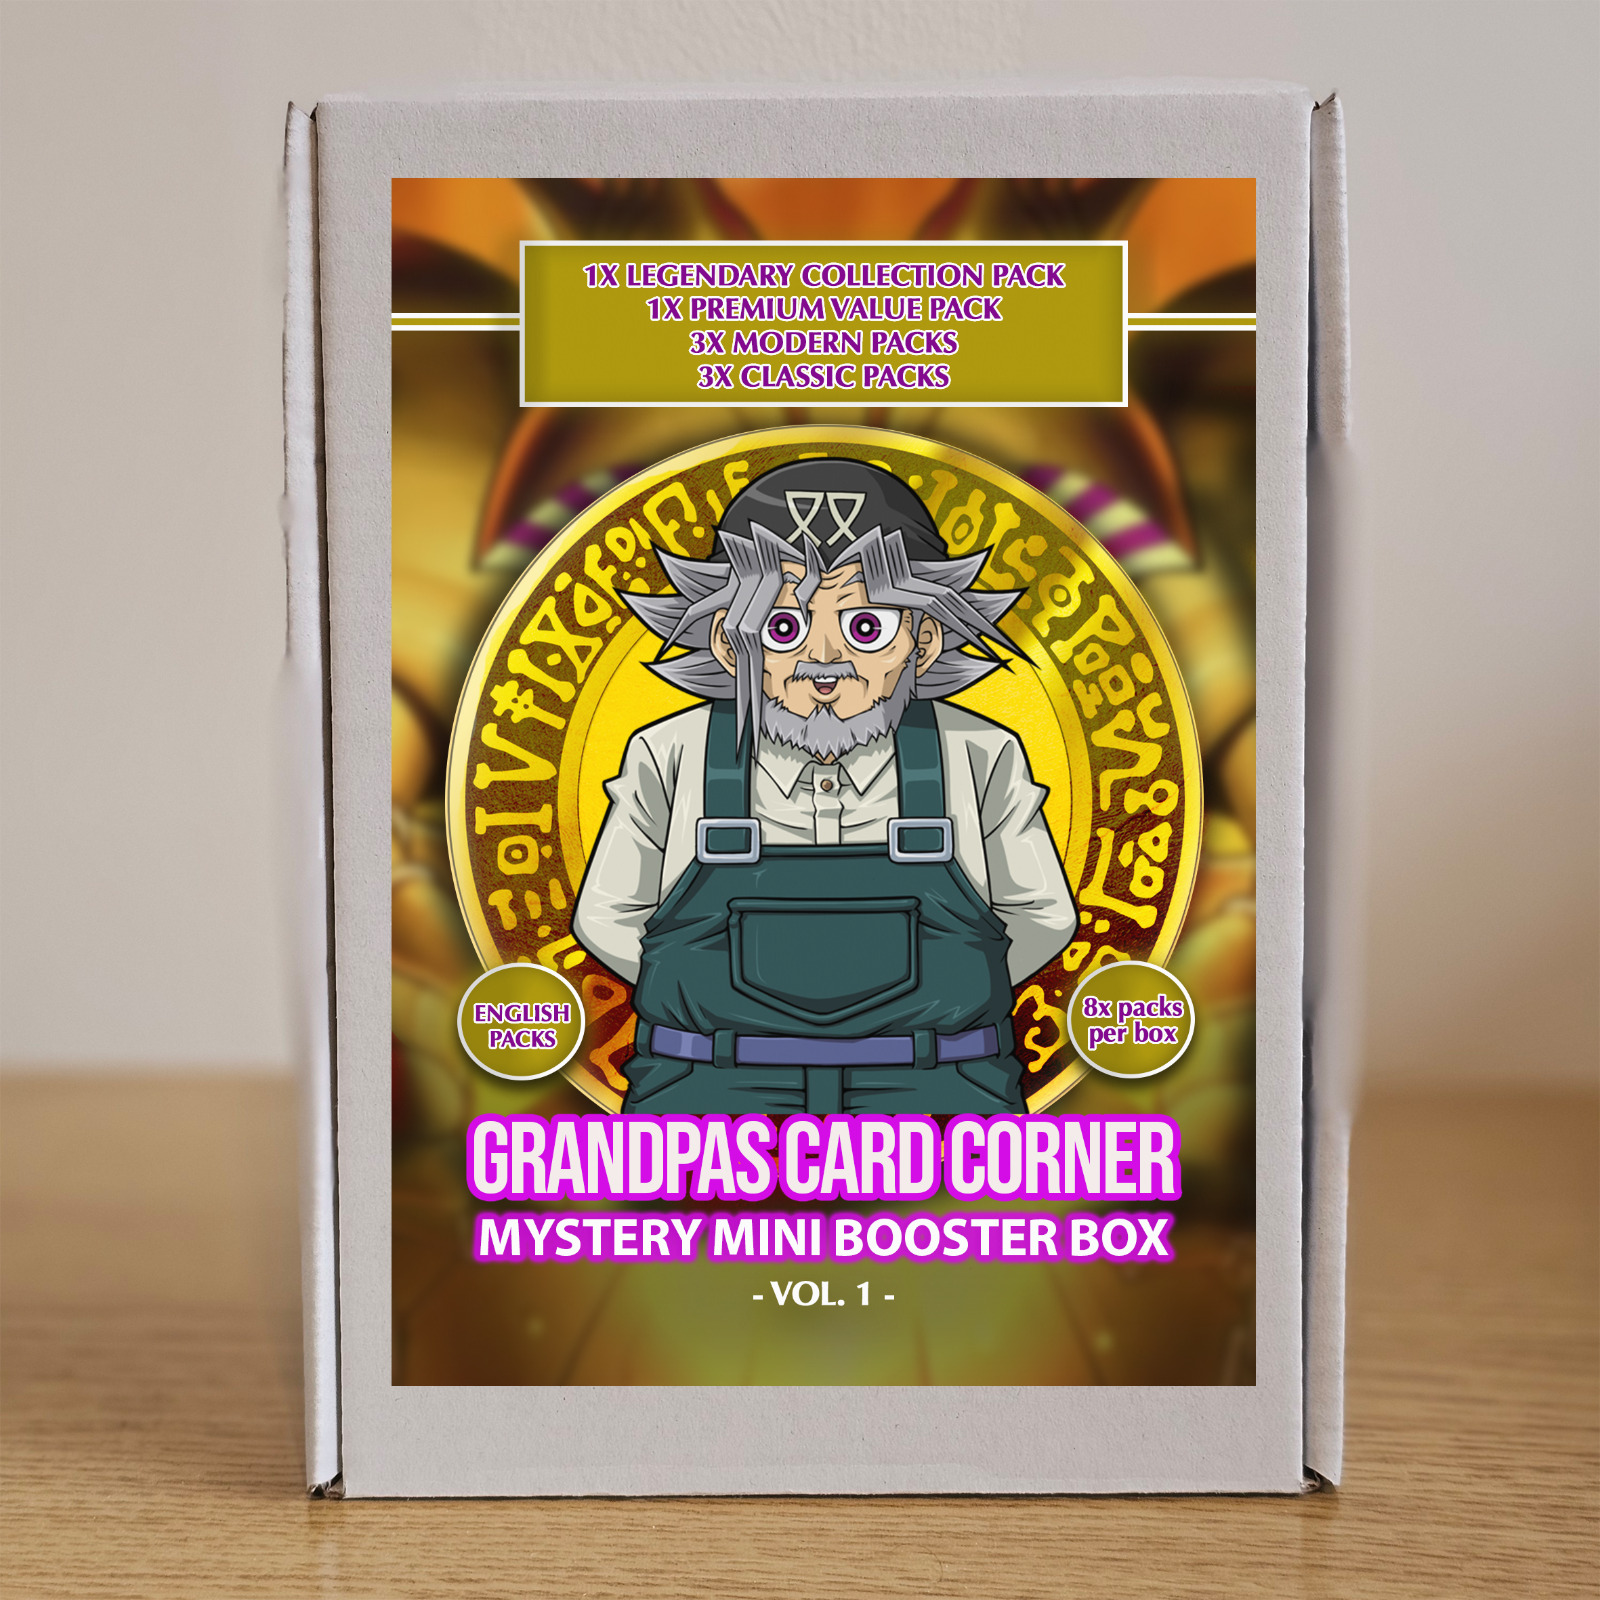 Yugioh - Mystery Mini Booster Box Vol. 1 - Grandpas Card Corner Exclusive